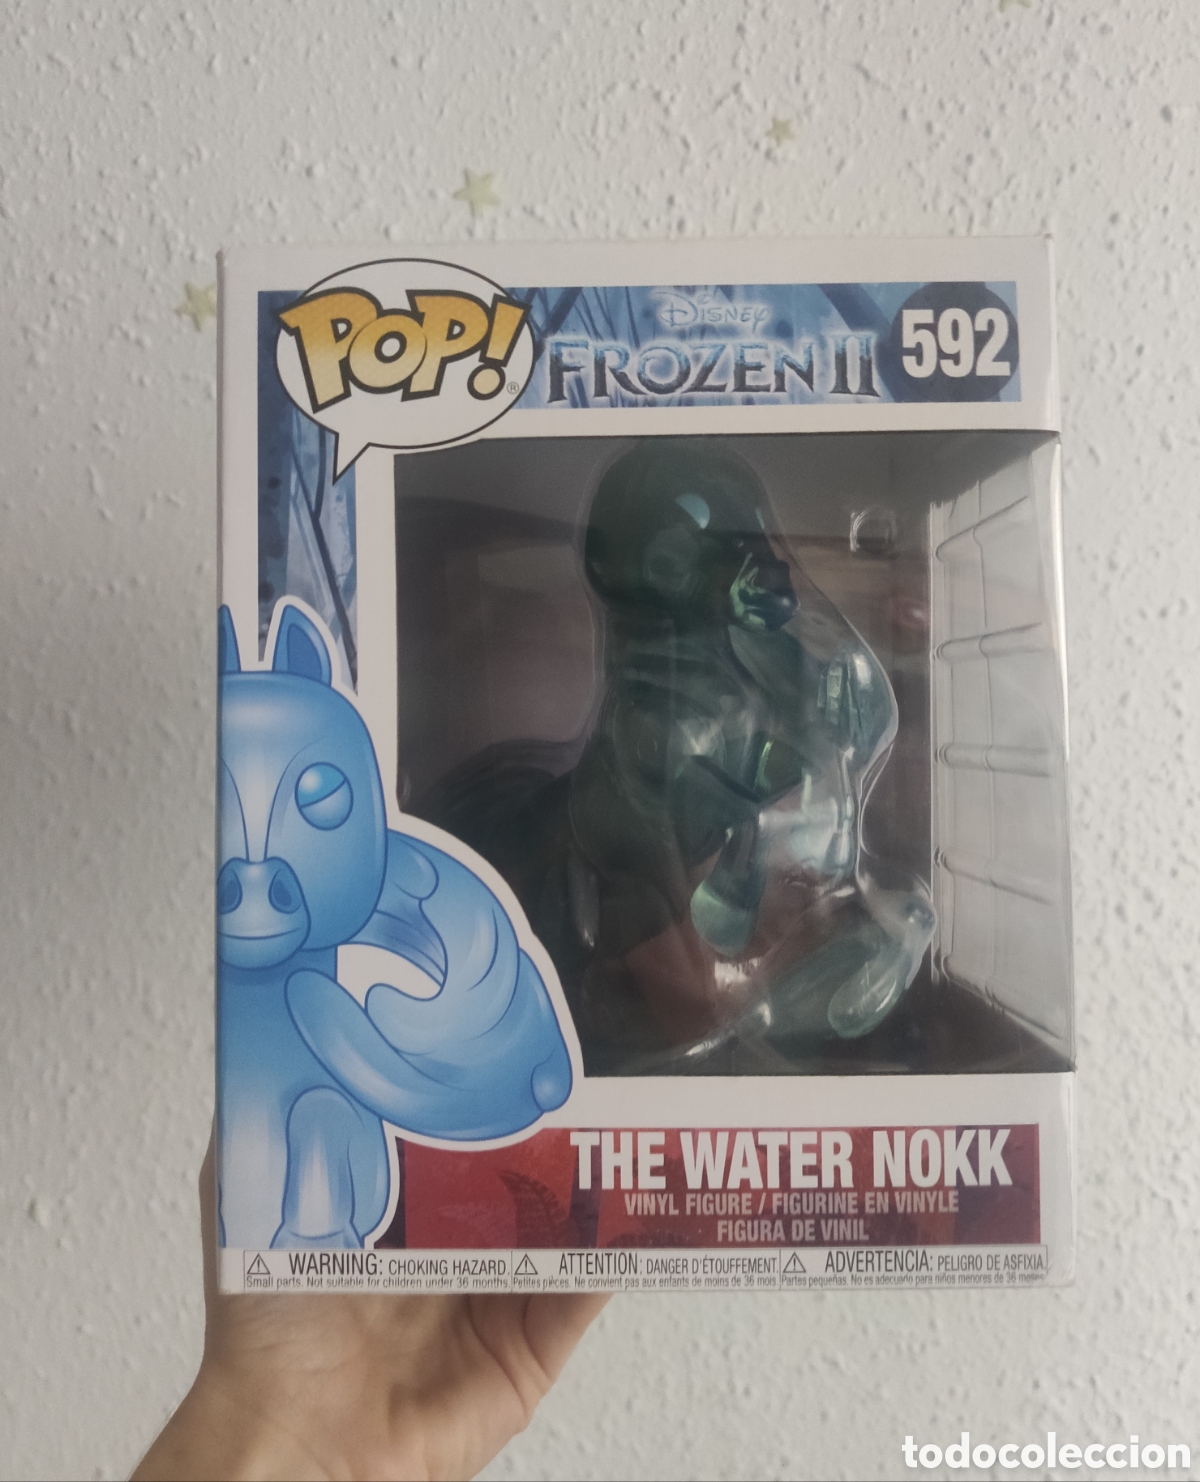 funko pop ”the water nokk” de frozen Compra venta en todocoleccion